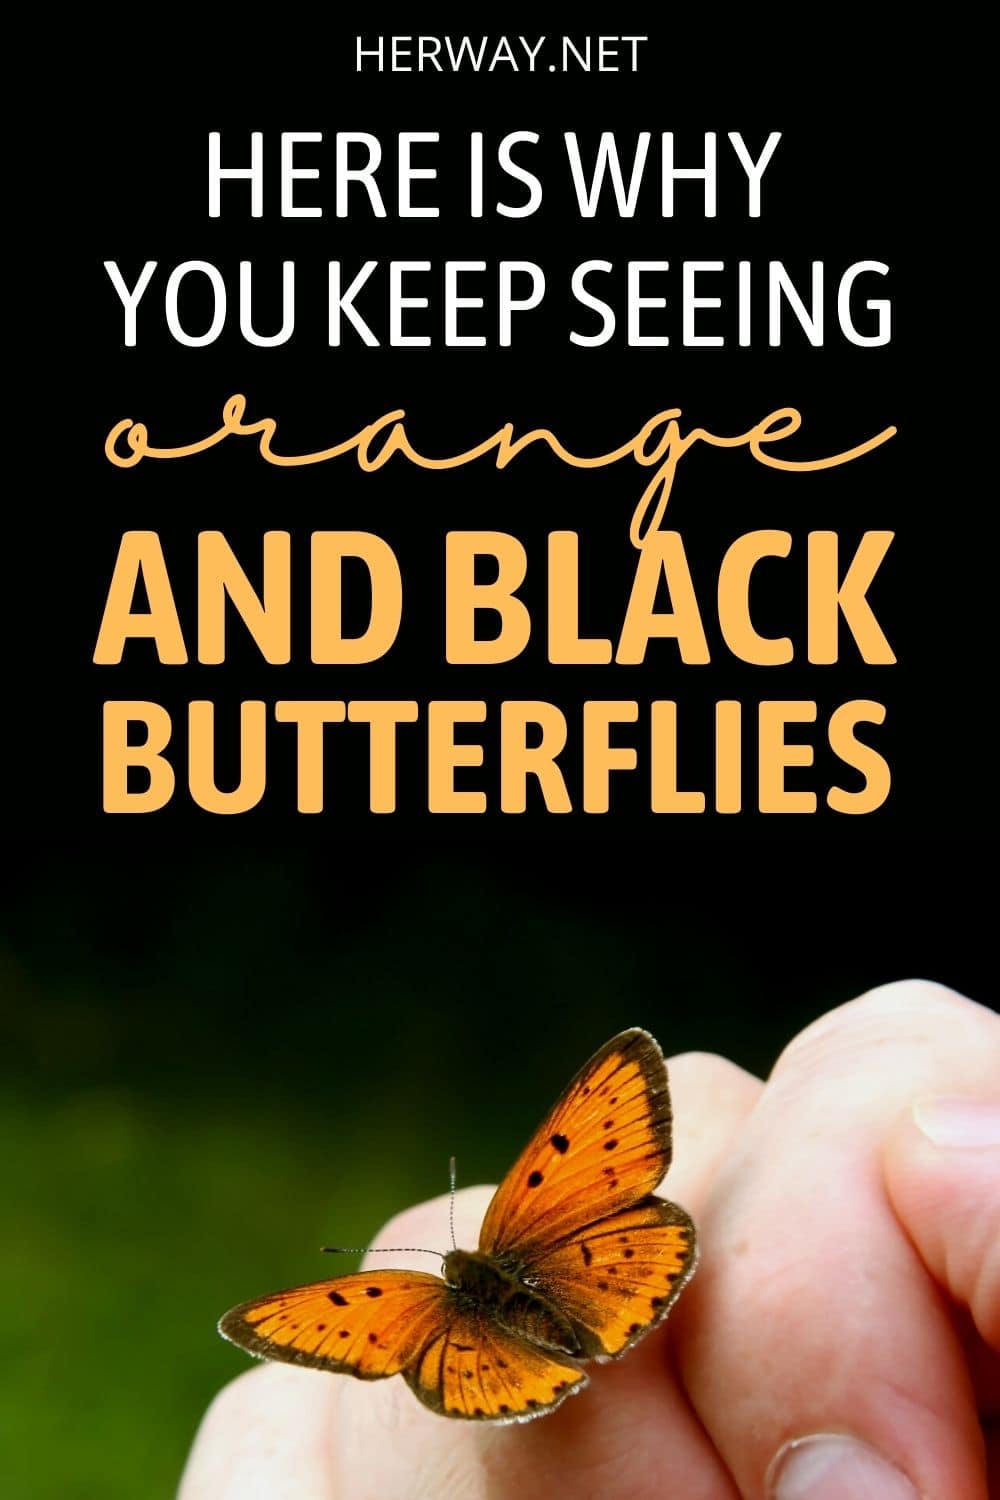 Significato della farfalla arancione e nera Re delle farfalle Pinterest